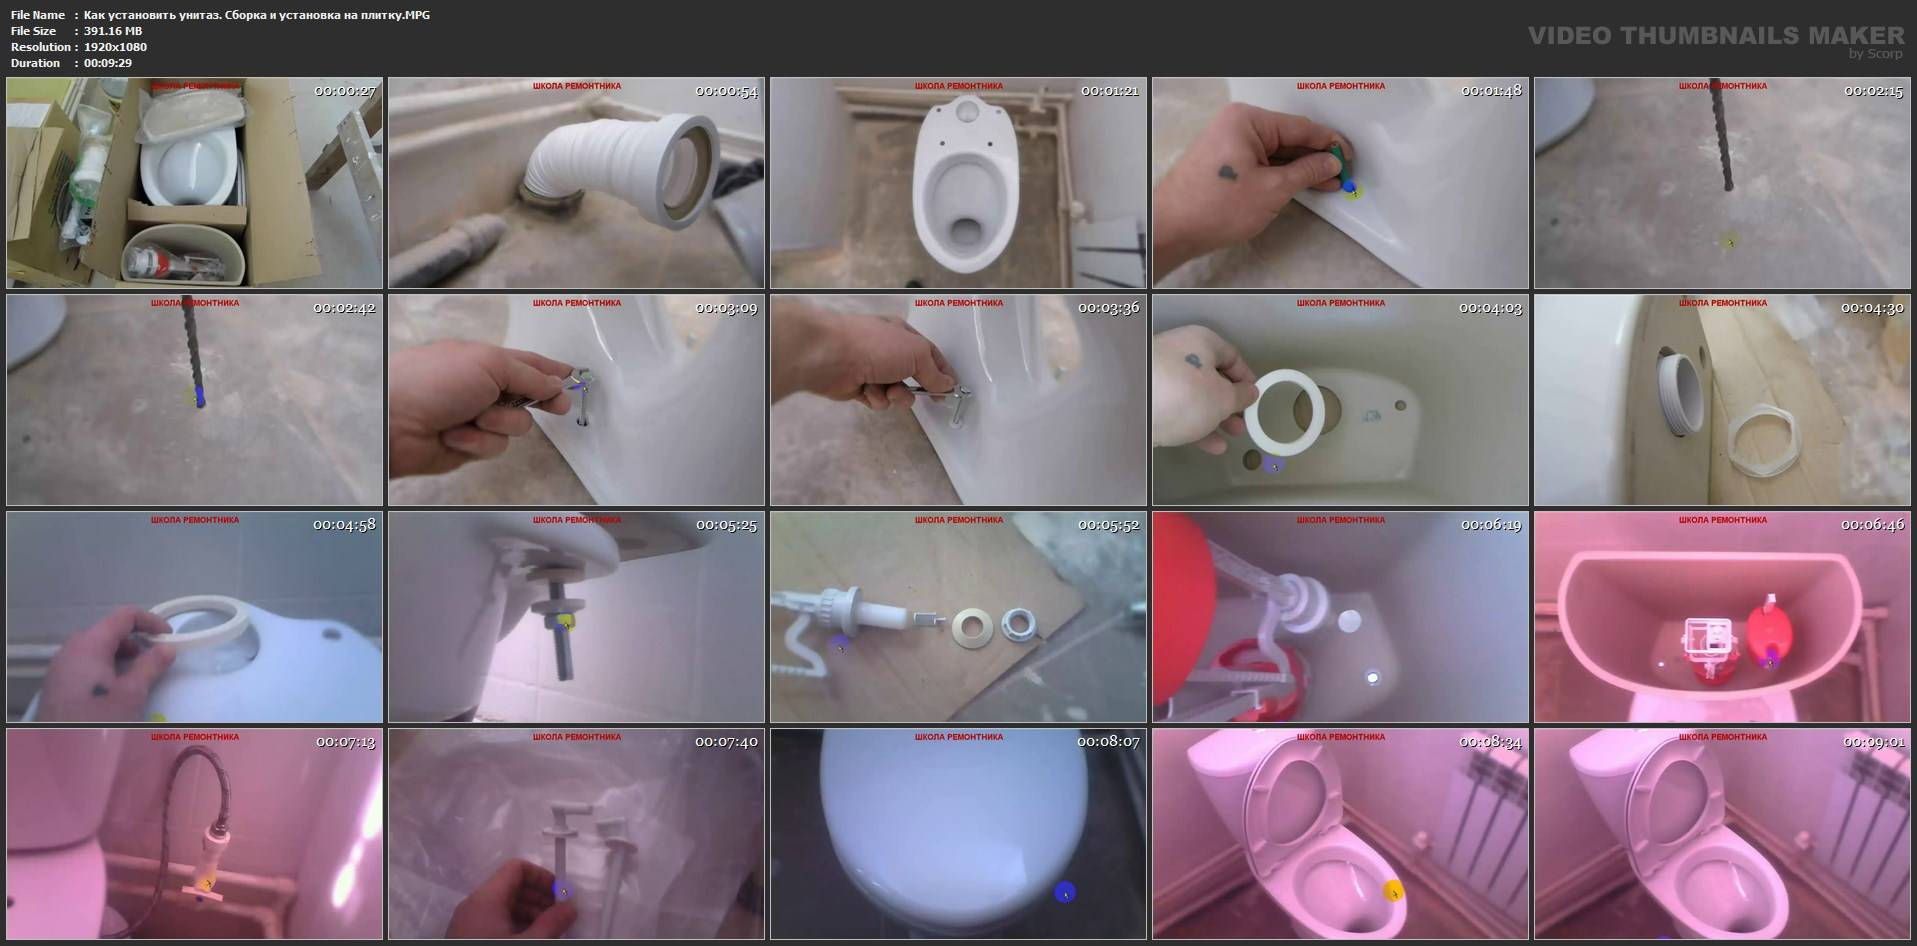 Как установить унитаз своими руками: видео-урок как правильно и бесплатно установить и подключить его к канализации